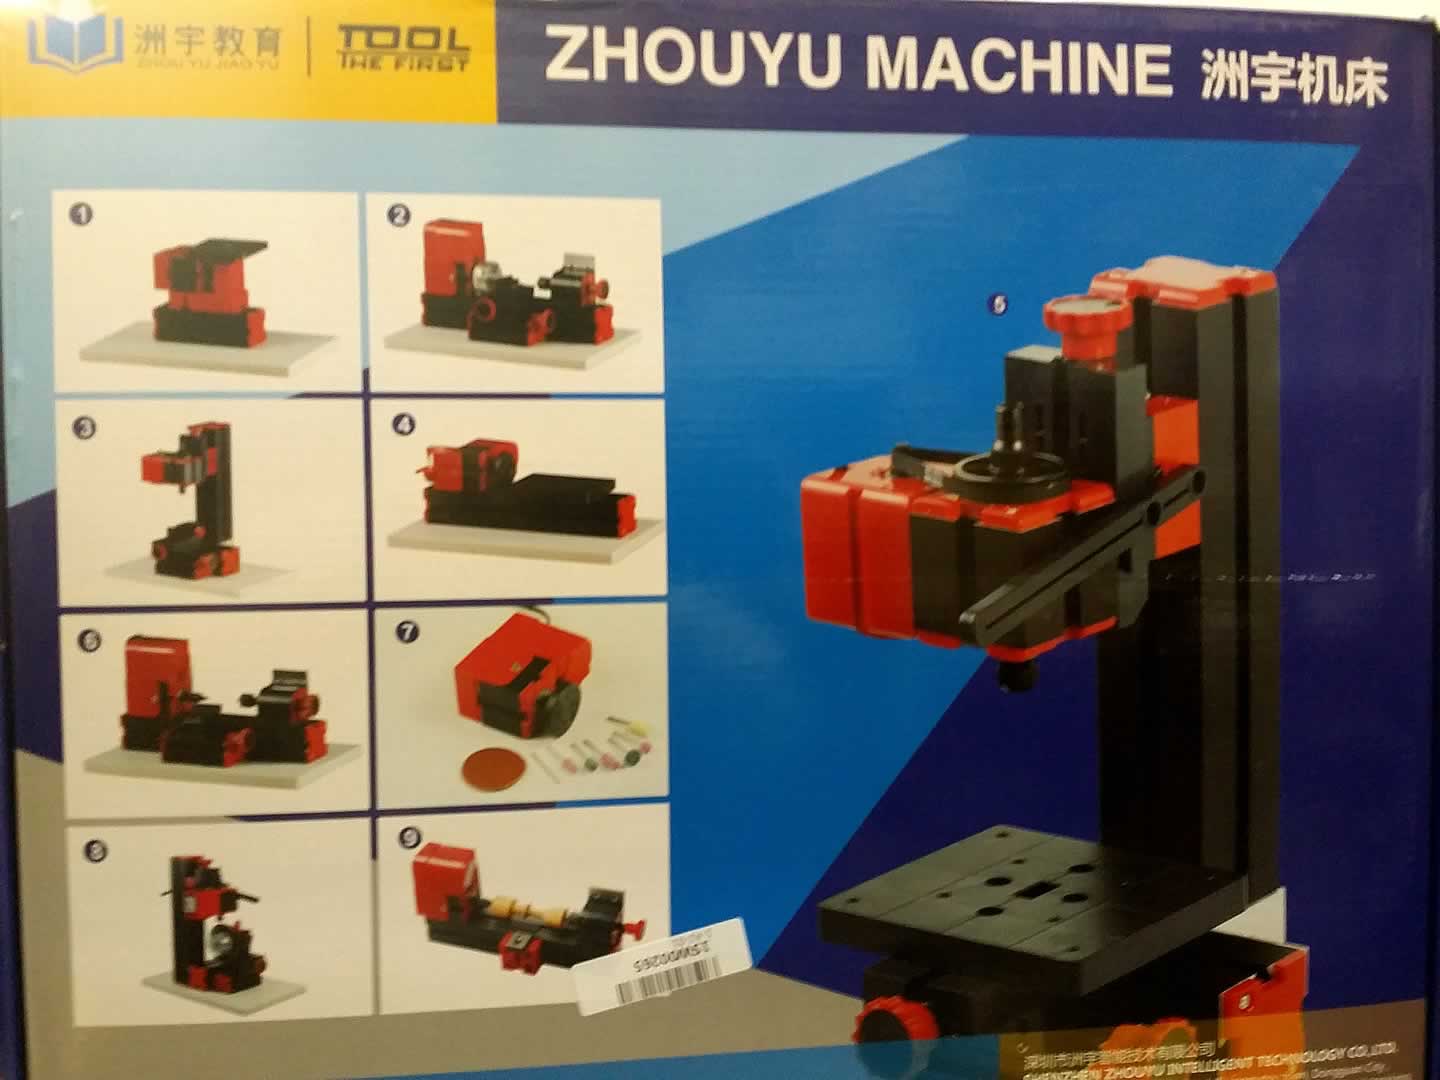 Zhouyu Machine